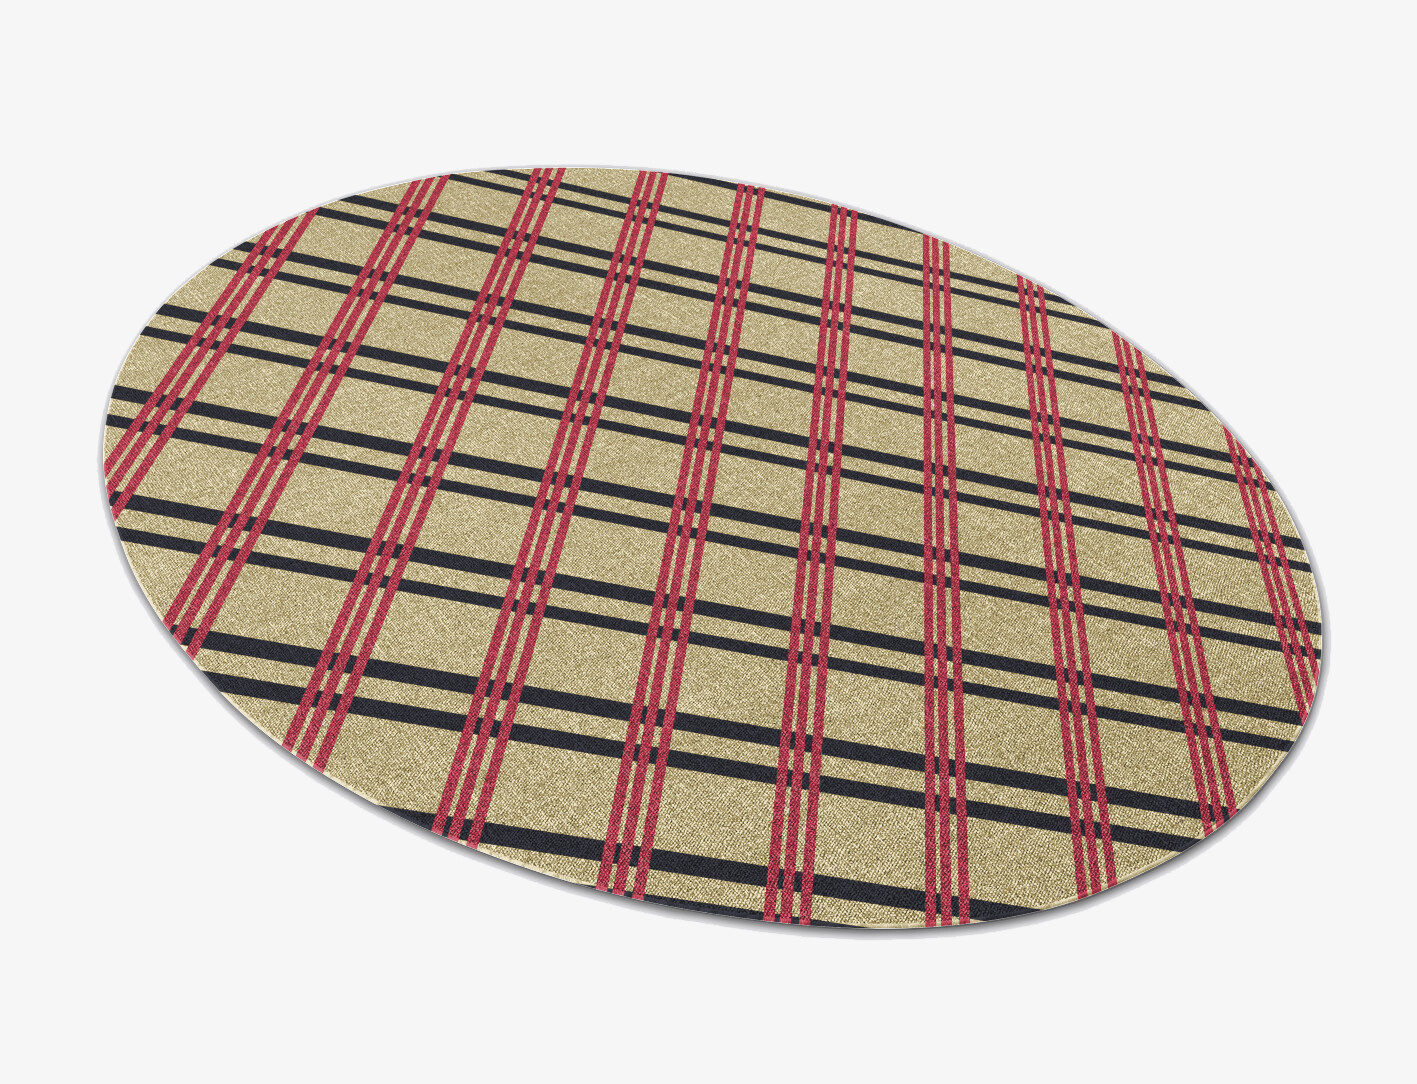 Zand Geometric Oval Flatweave New Zealand Wool Custom Rug by Rug Artisan